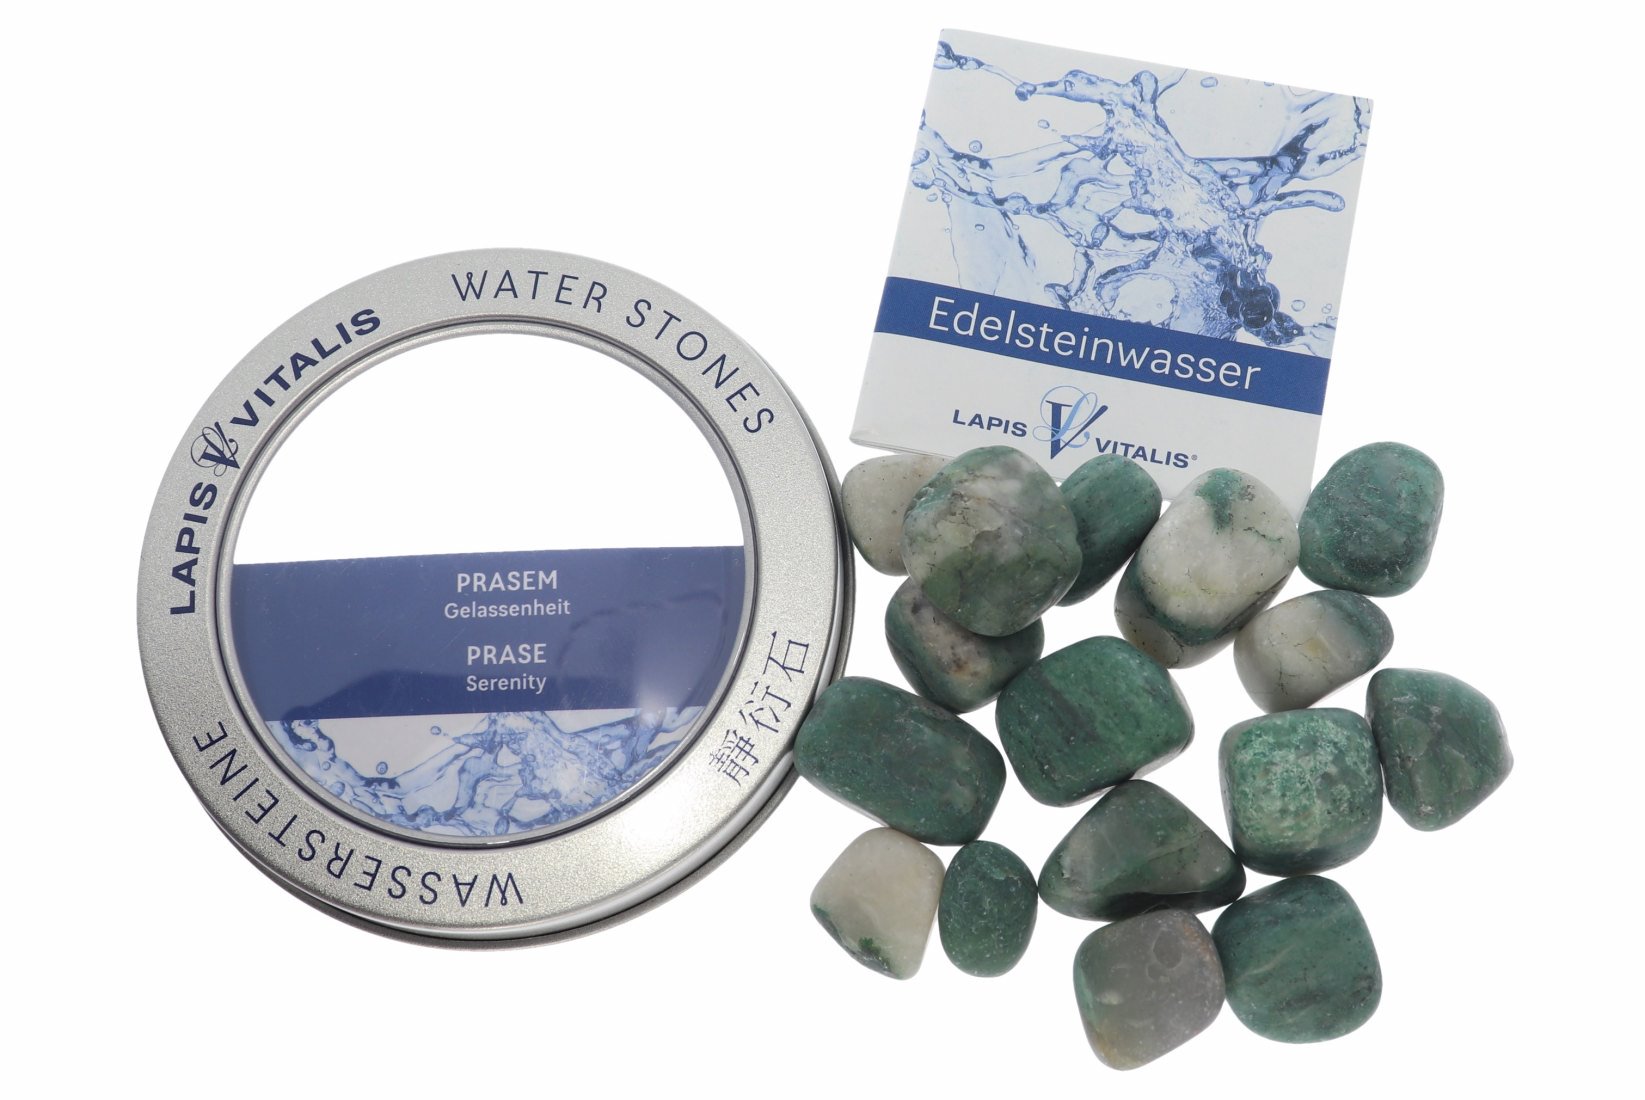 Edelstein Wasser mit Geschenkdose - Gelassenheit  Prasem Smaragdquarz Lapis Vitalis®